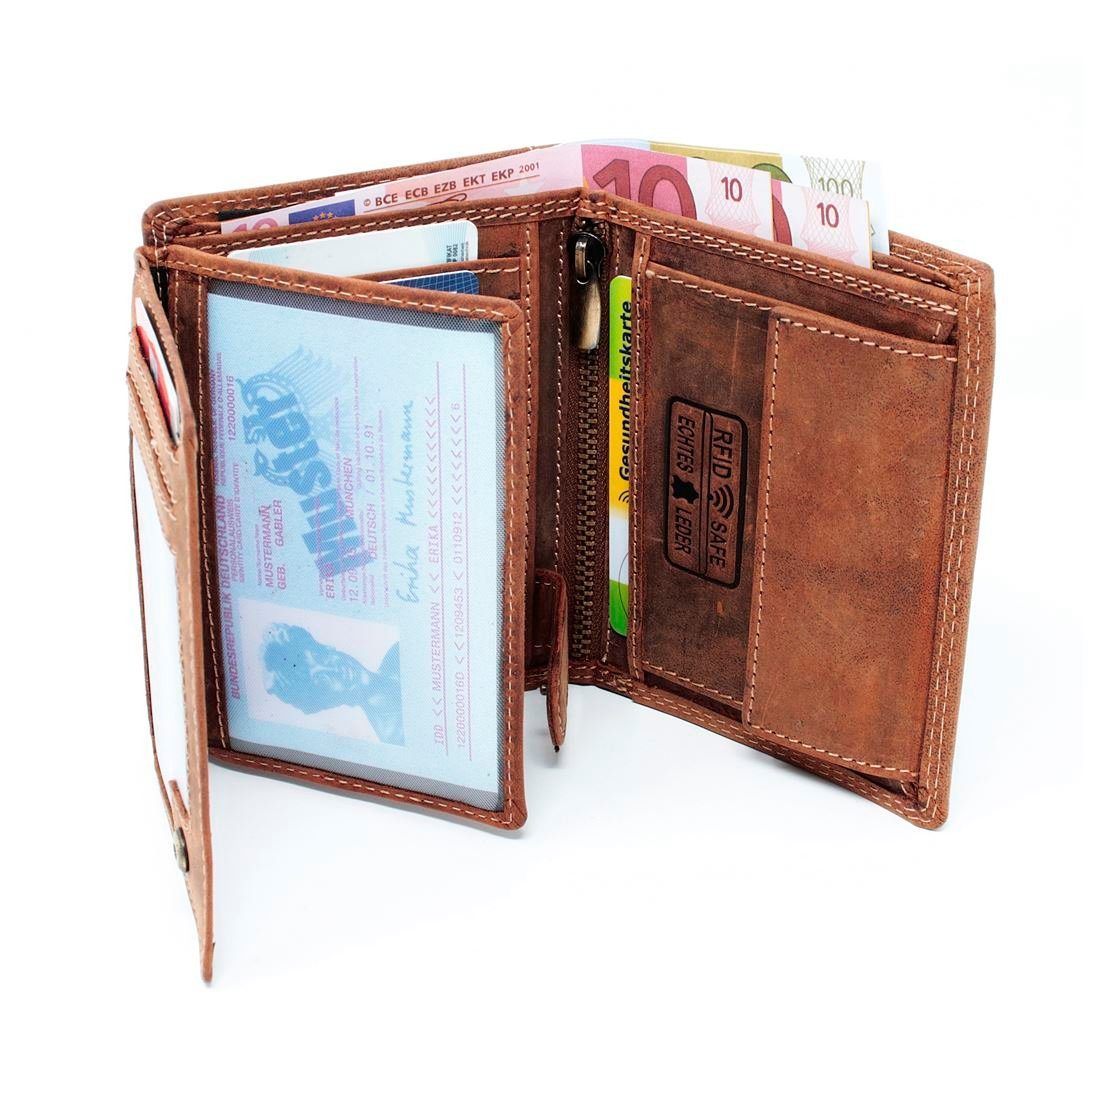 SHG Geldbörse Herren Geldbörse Börse, mit Schutz Portemonnaie Geldbeutel RFID Lederbörse Männerbörse Leder Münzfach Brieftasche